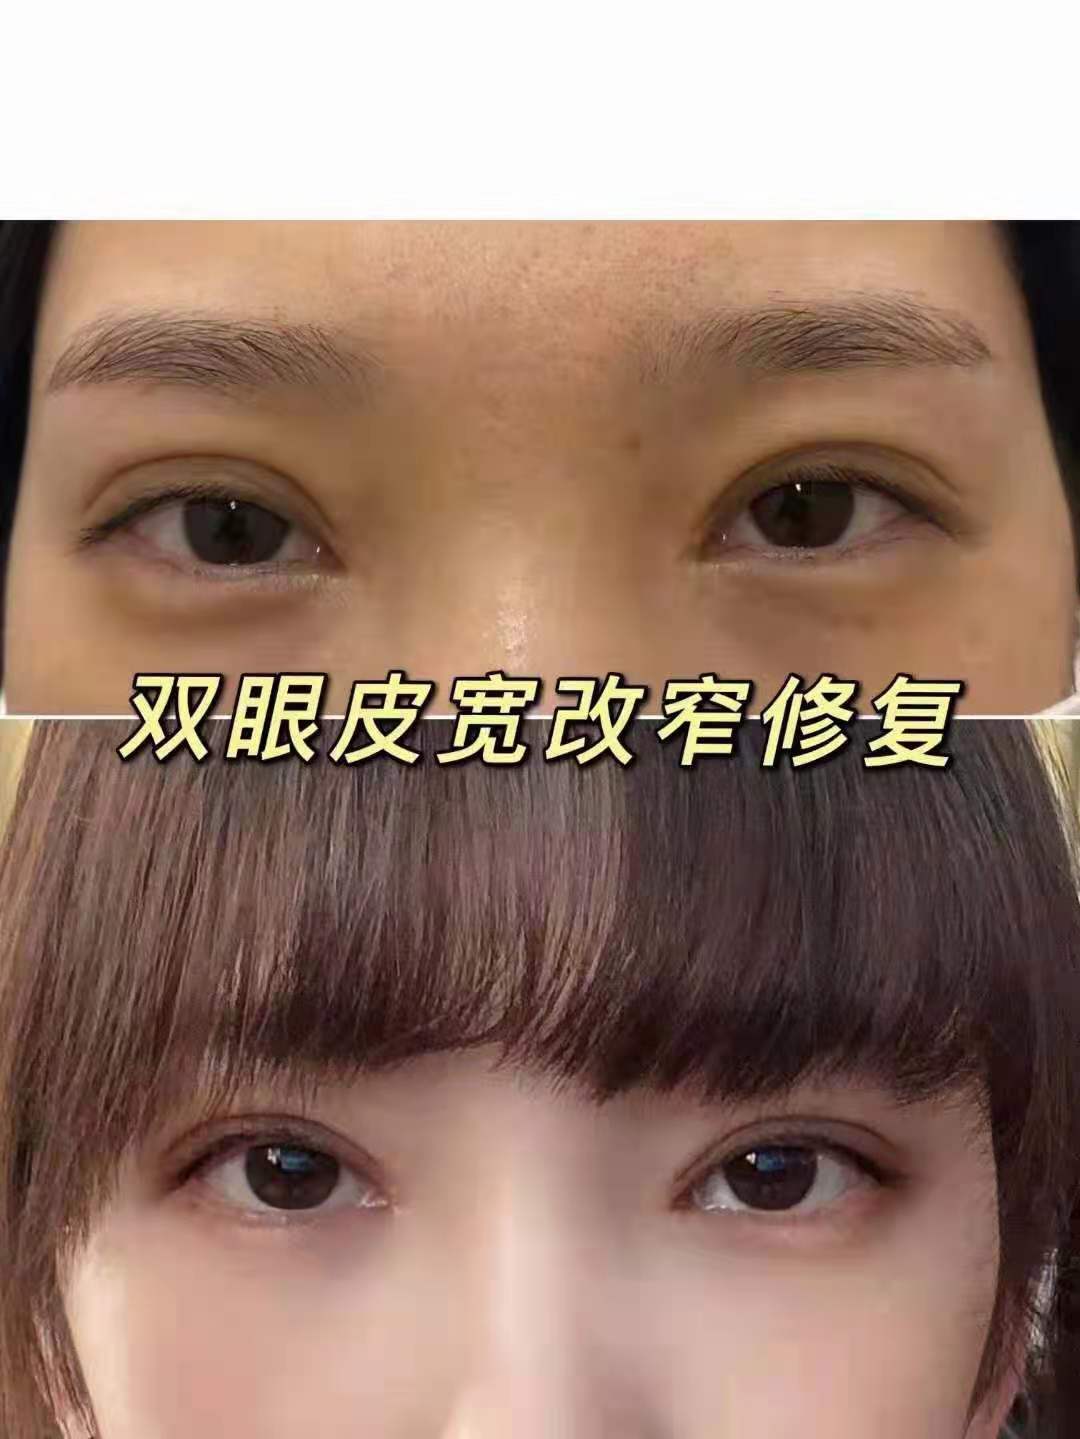 彭昌福修复双眼皮案例